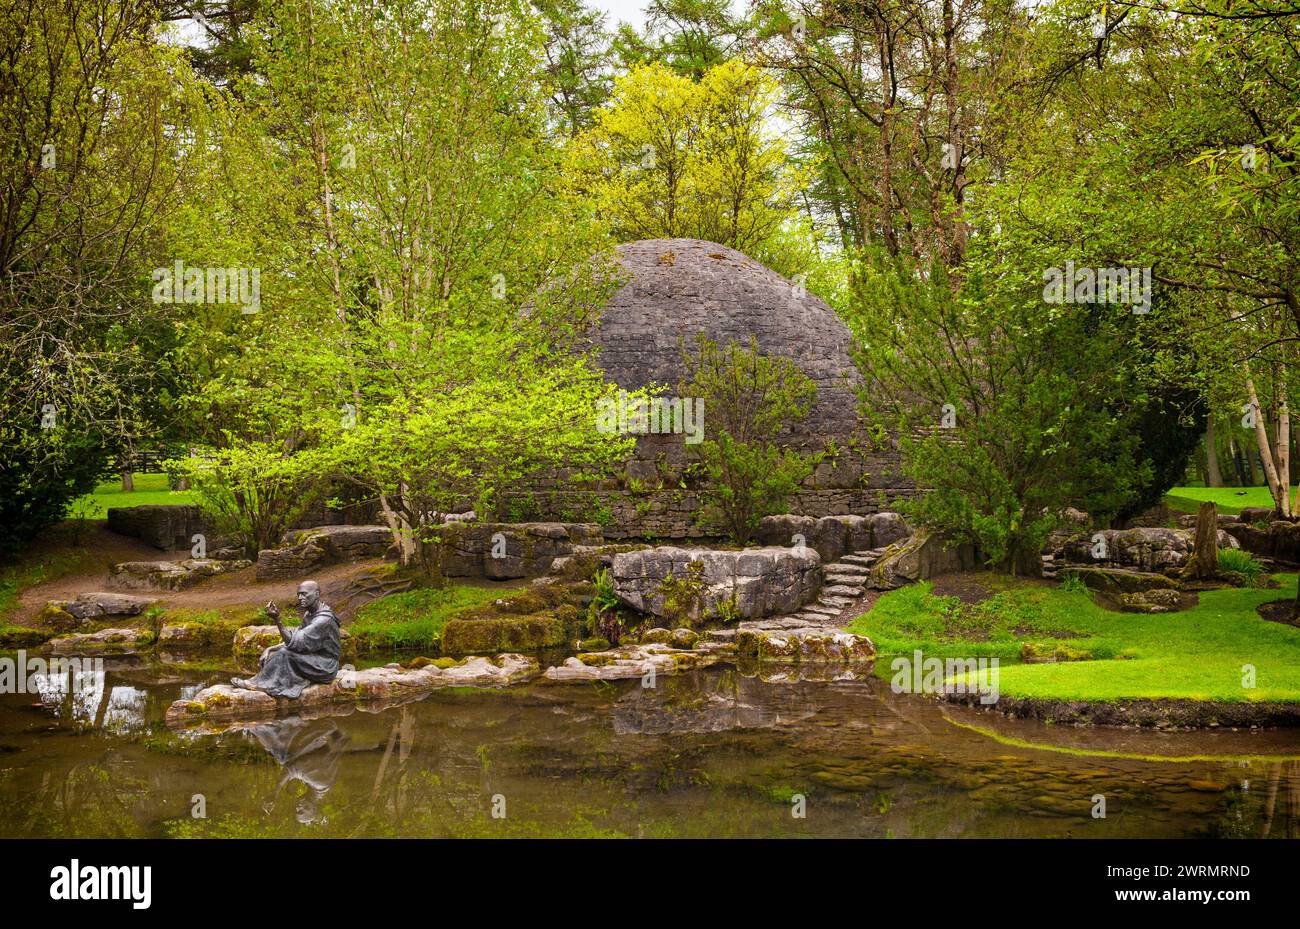 Im County Kildare befindet sich das Irish National Stud mit zwei herrlichen Gärten, von denen einer die Heilige Fiachra, die Schutzpatronin der Gärtner und A, feiert Stockfoto